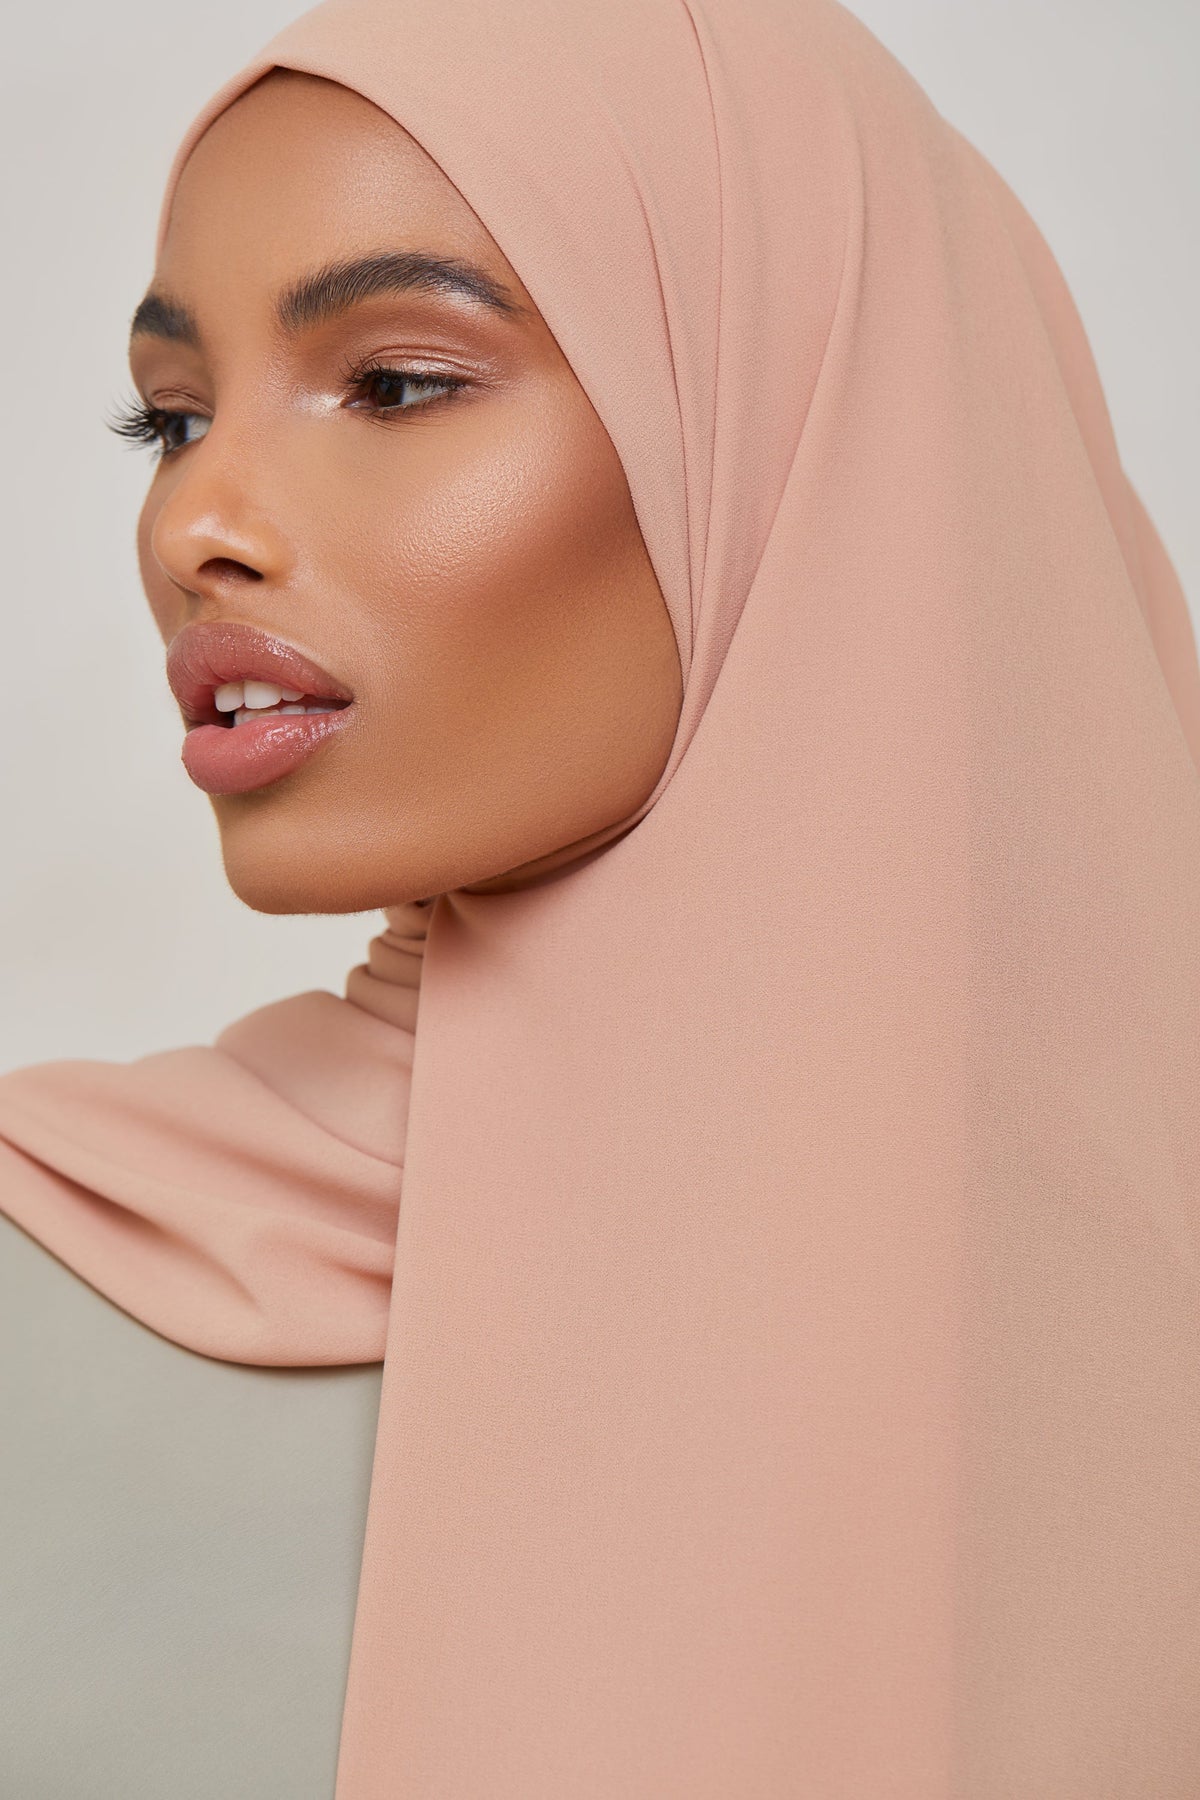 Essential Chiffon Hijab - Almond Scarves & Shawls saigonodysseyhotel 